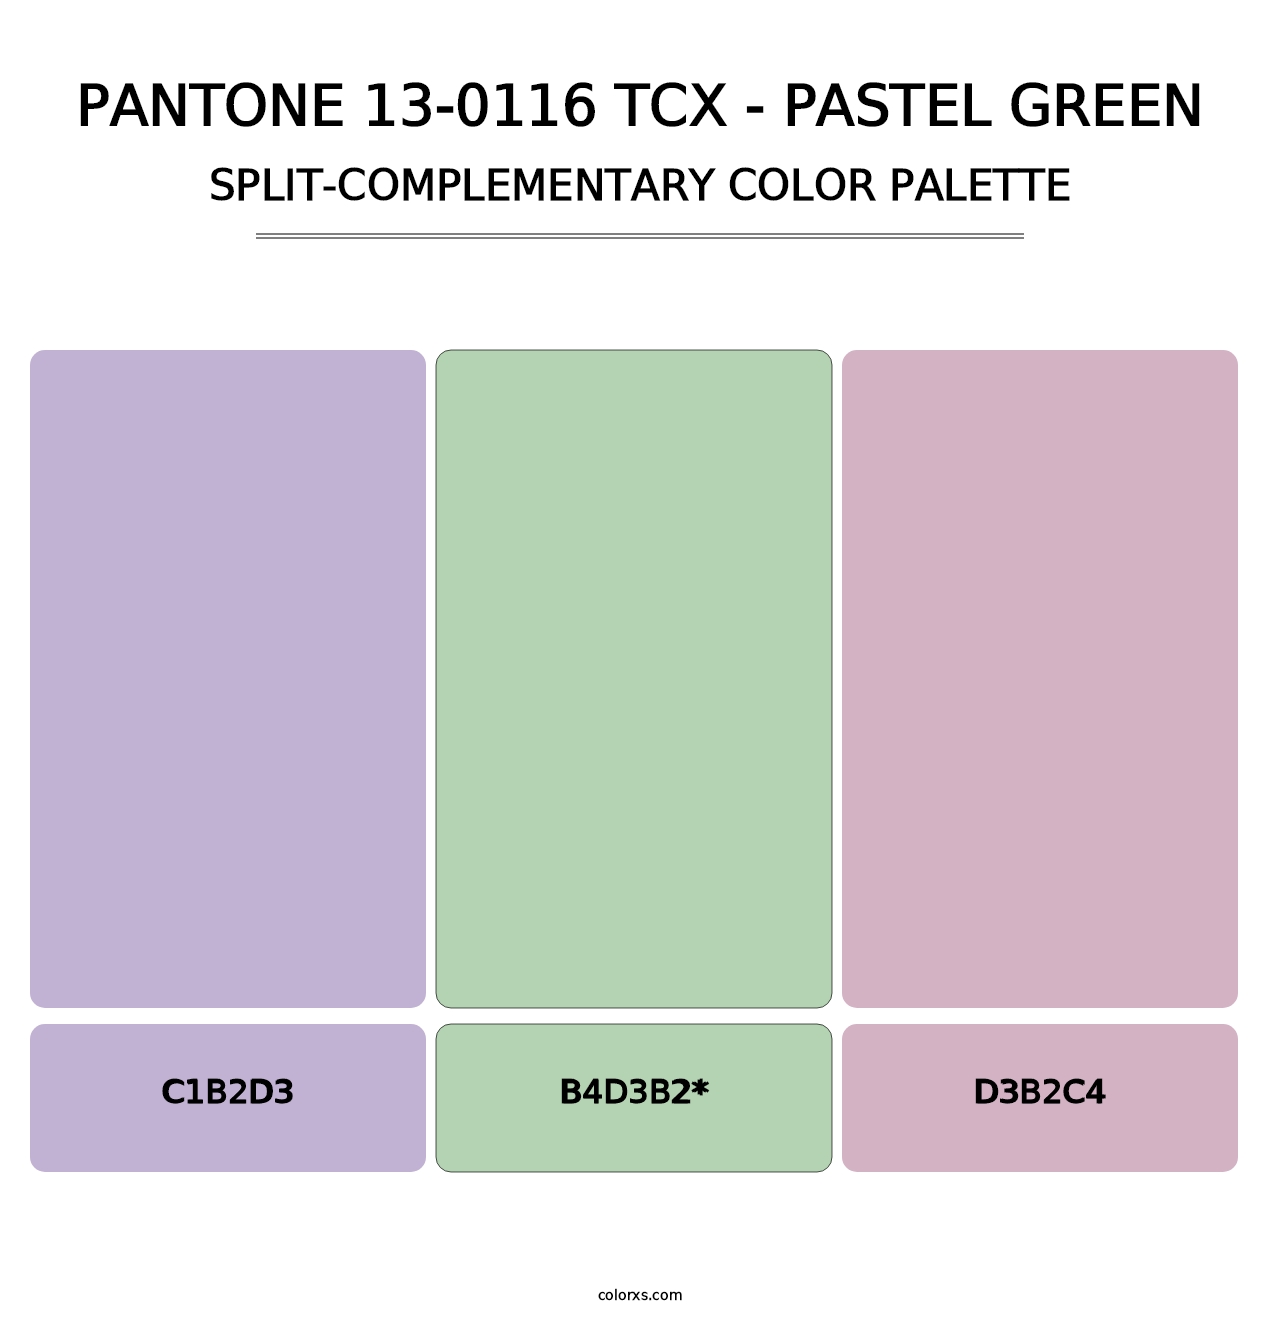 PANTONE 13-0116 TCX - Pastel Green - Split-Complementary Color Palette